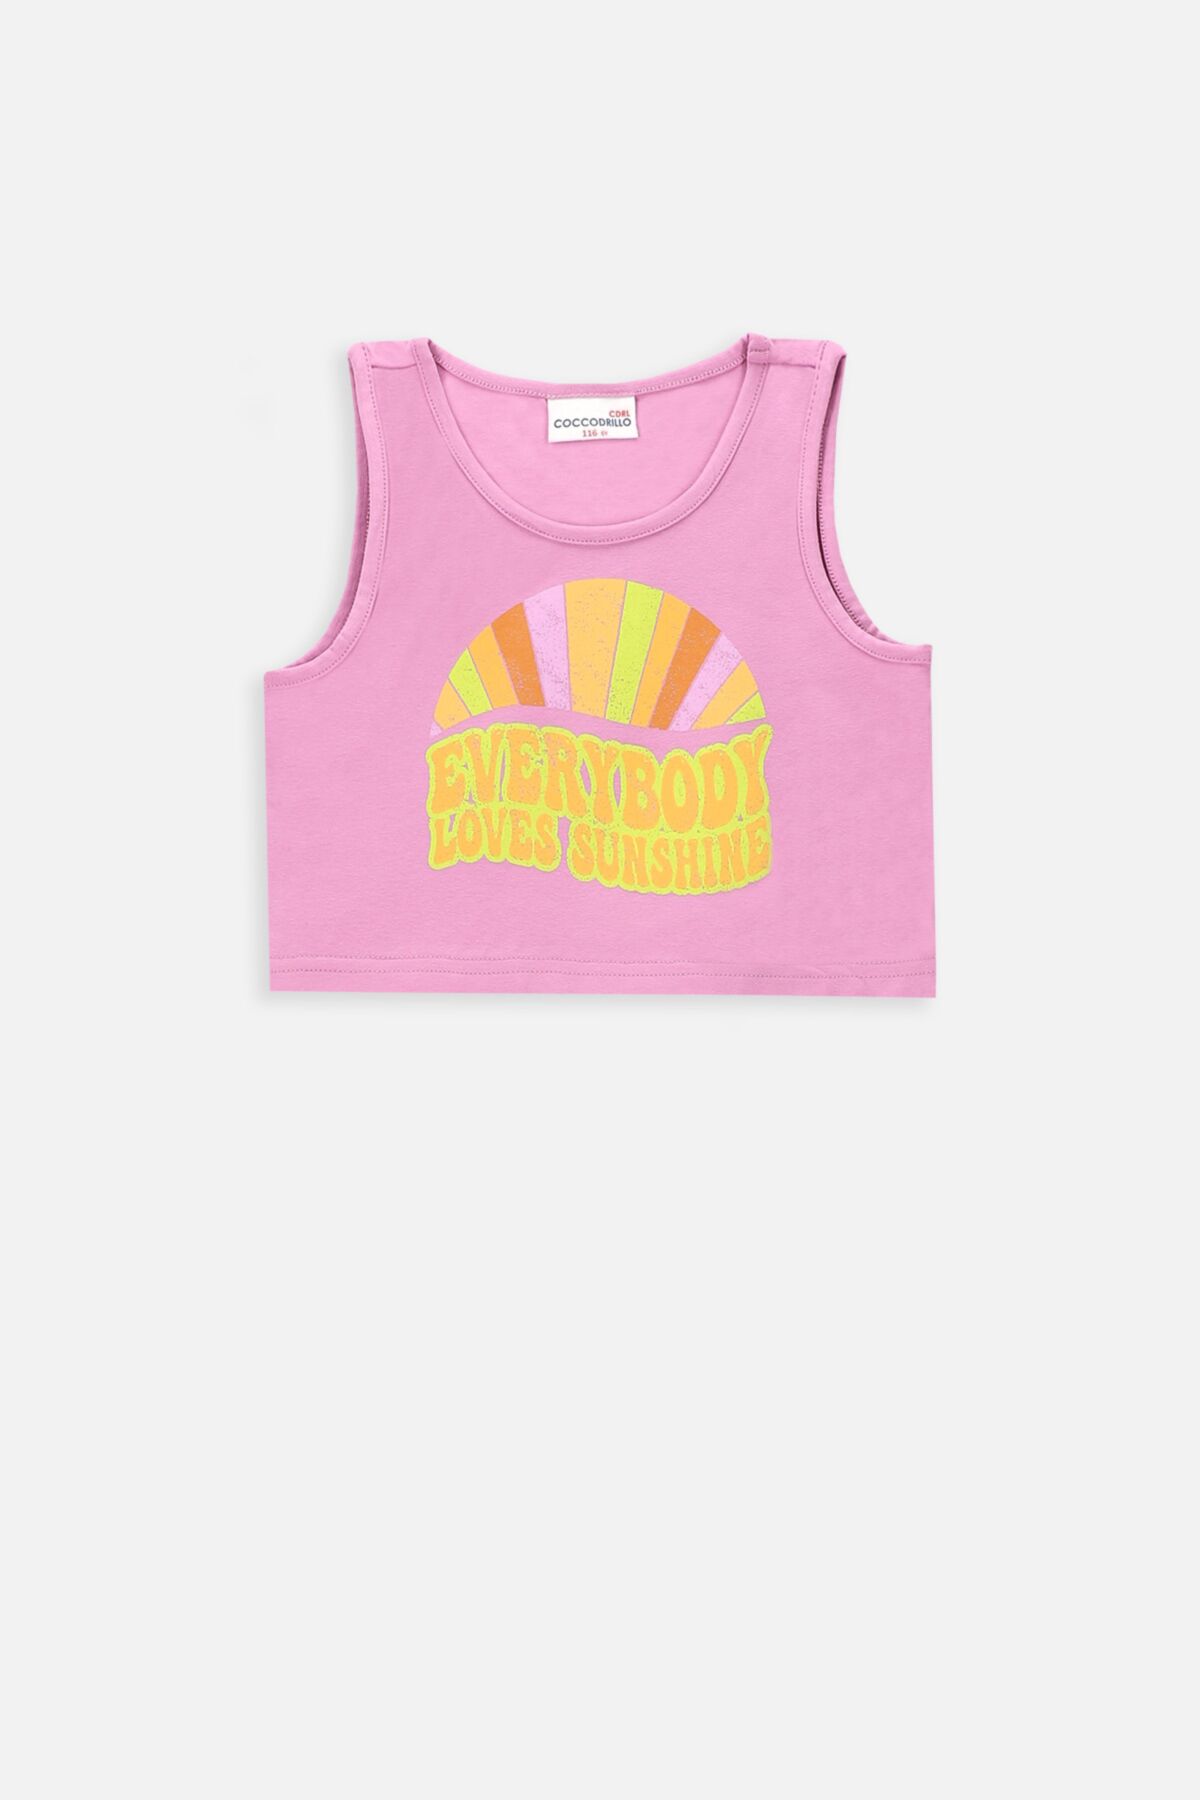 T-shirt bez rękawów różowy sportowy crop top z nadrukiem 2234626